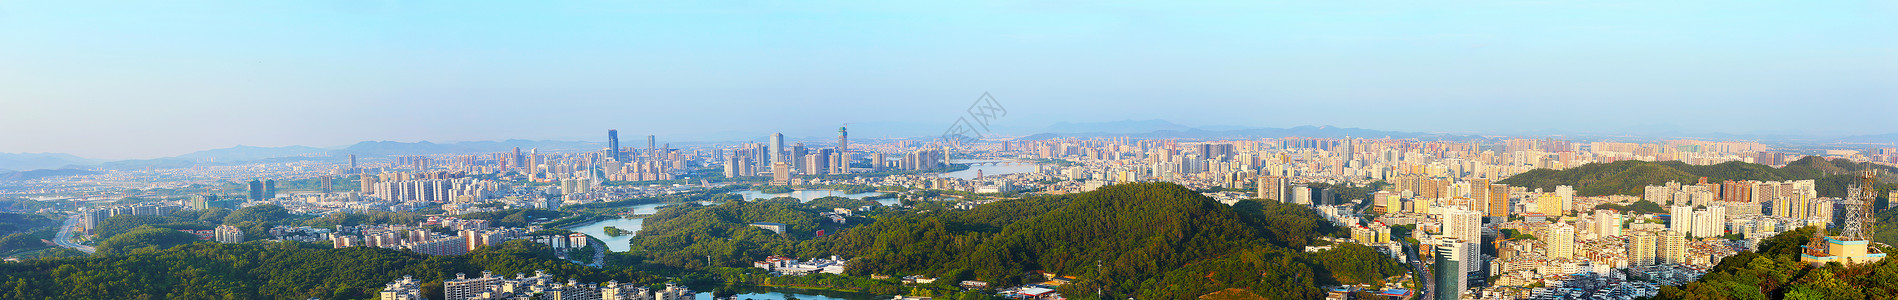 美丽鹅城惠州全景背景